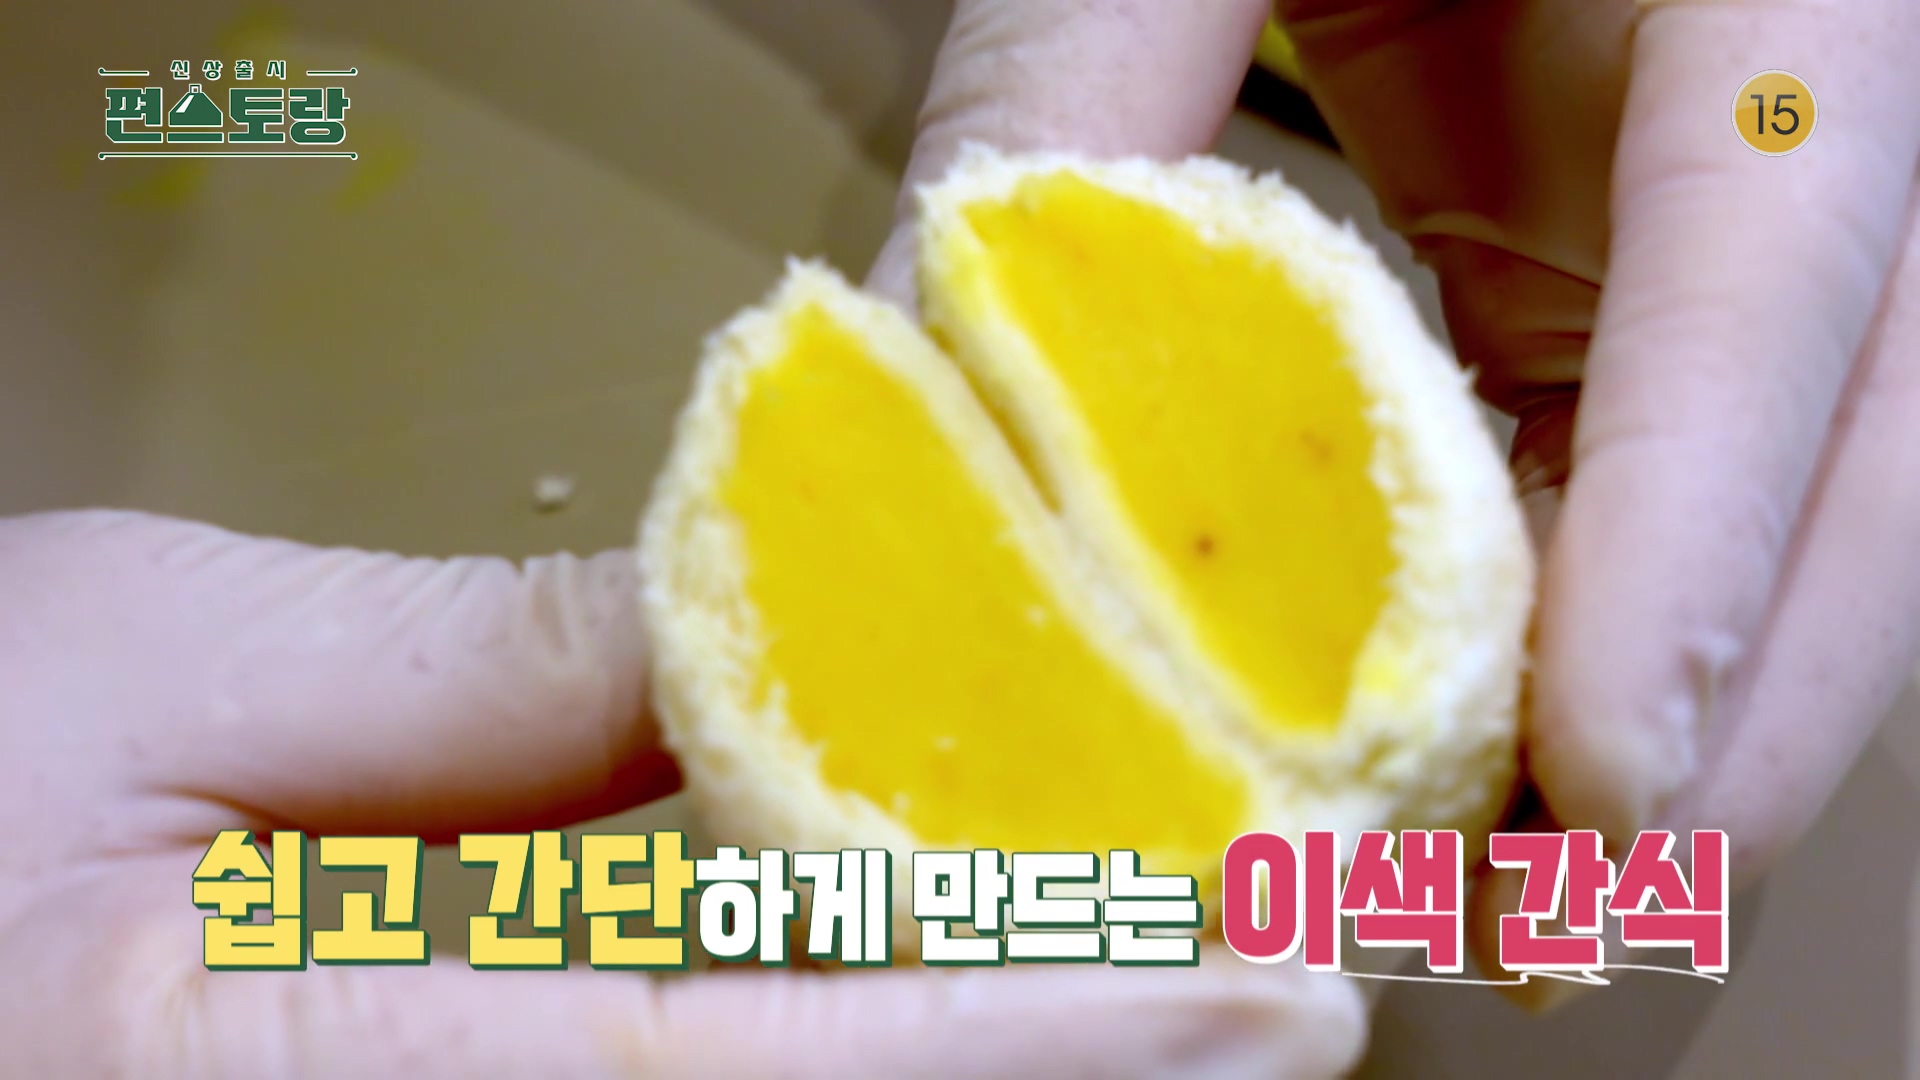 KBS 편스토랑 삼형제 아빠 카피정 정상훈 고구마 잼을 만들어 넣은 고구마 샌드 레시피 만드는 방법 소개